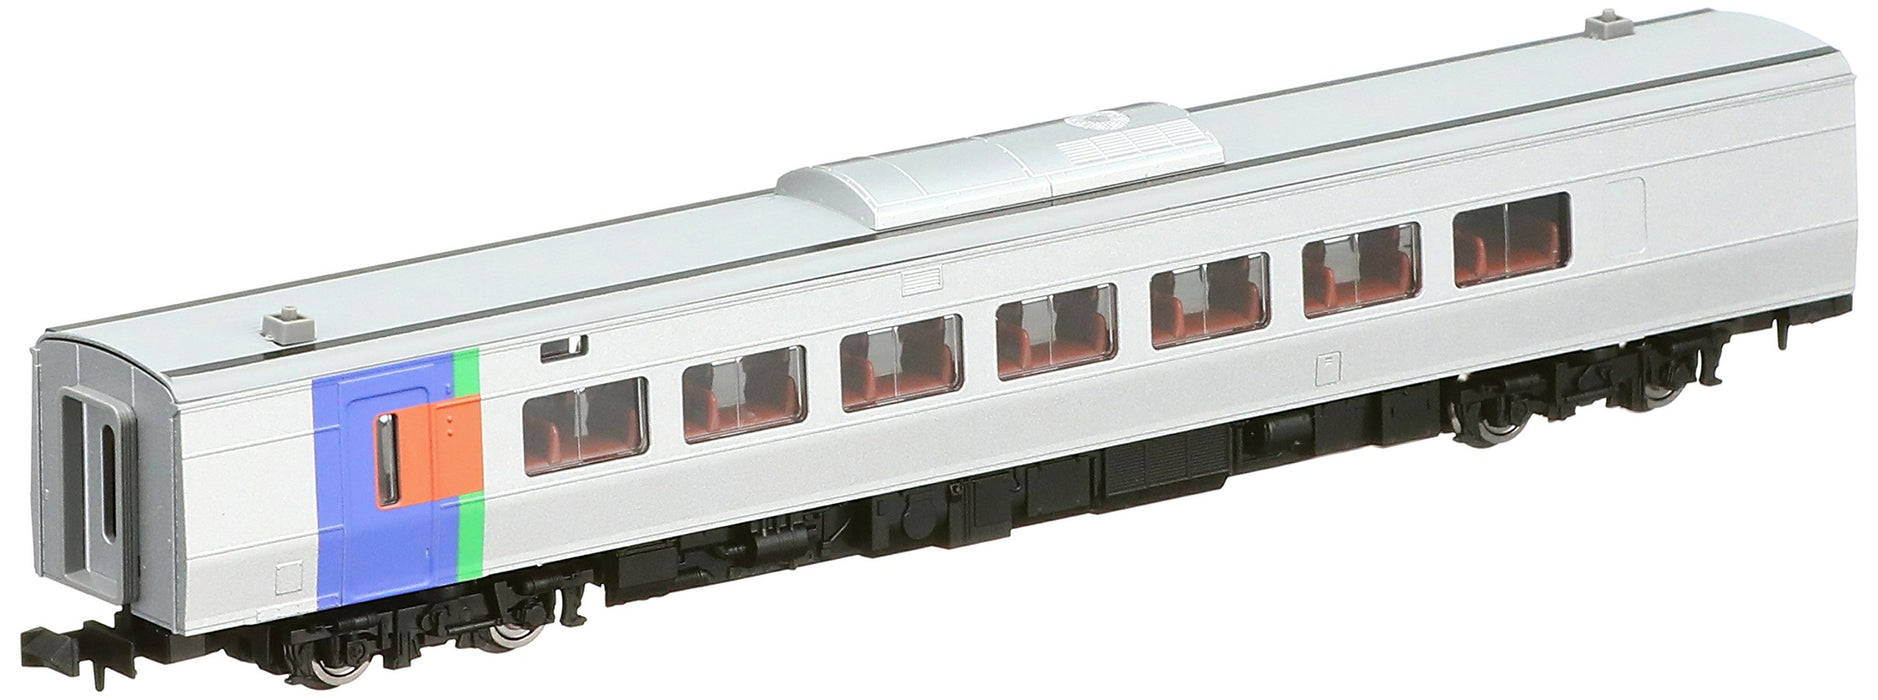 Tomytec Tomix N Gauge Kiha 260 1300 Train miniature diesel 9418